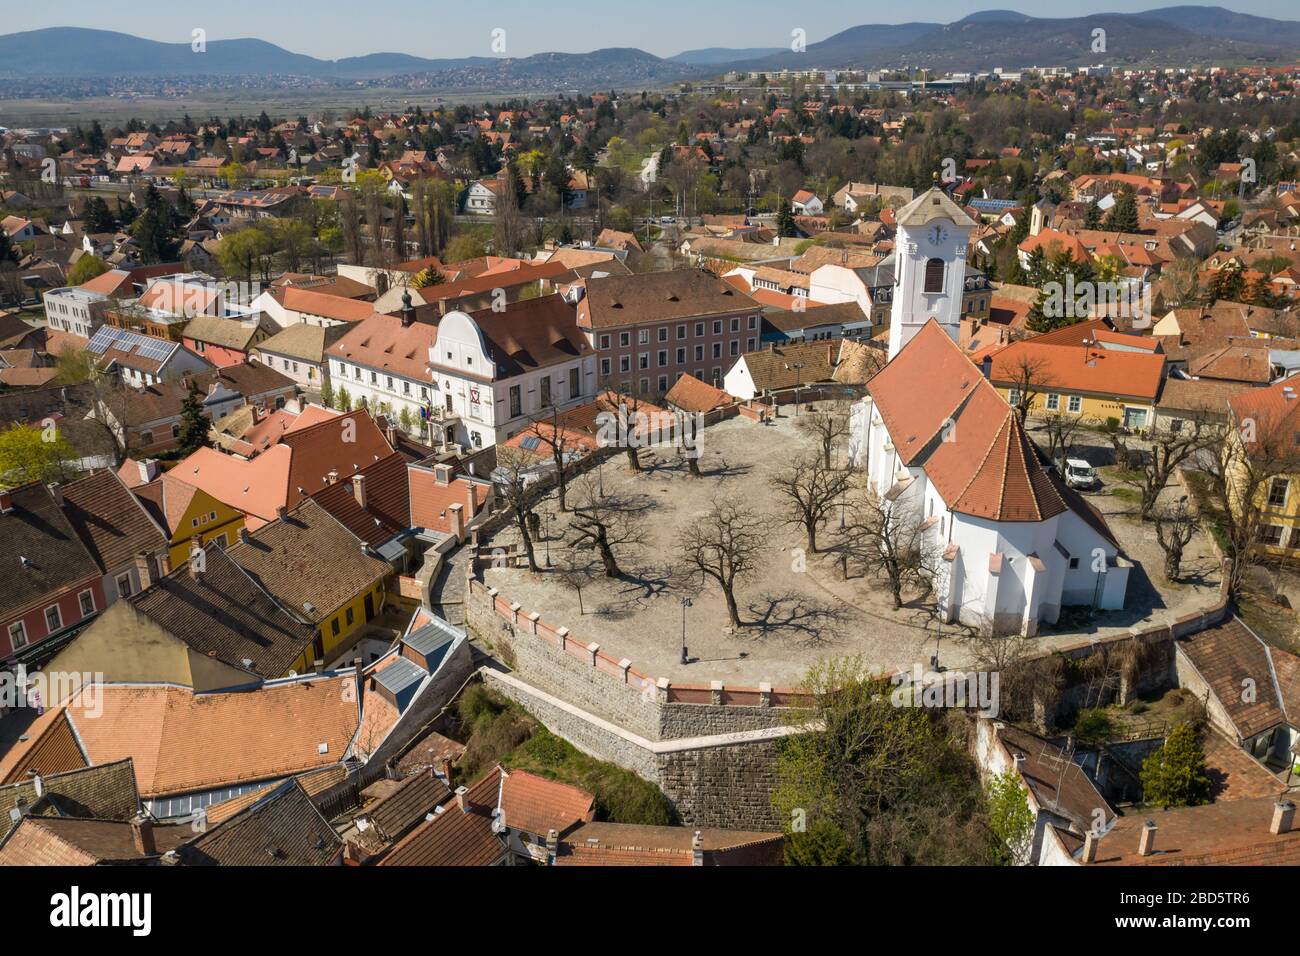 Destinazione turistica vuota a Szentendre, Ungheria. Normalmente pieno di turisti e bazar. Settore dei viaggi, turismo fermato in Europa (coronavirus) Foto Stock